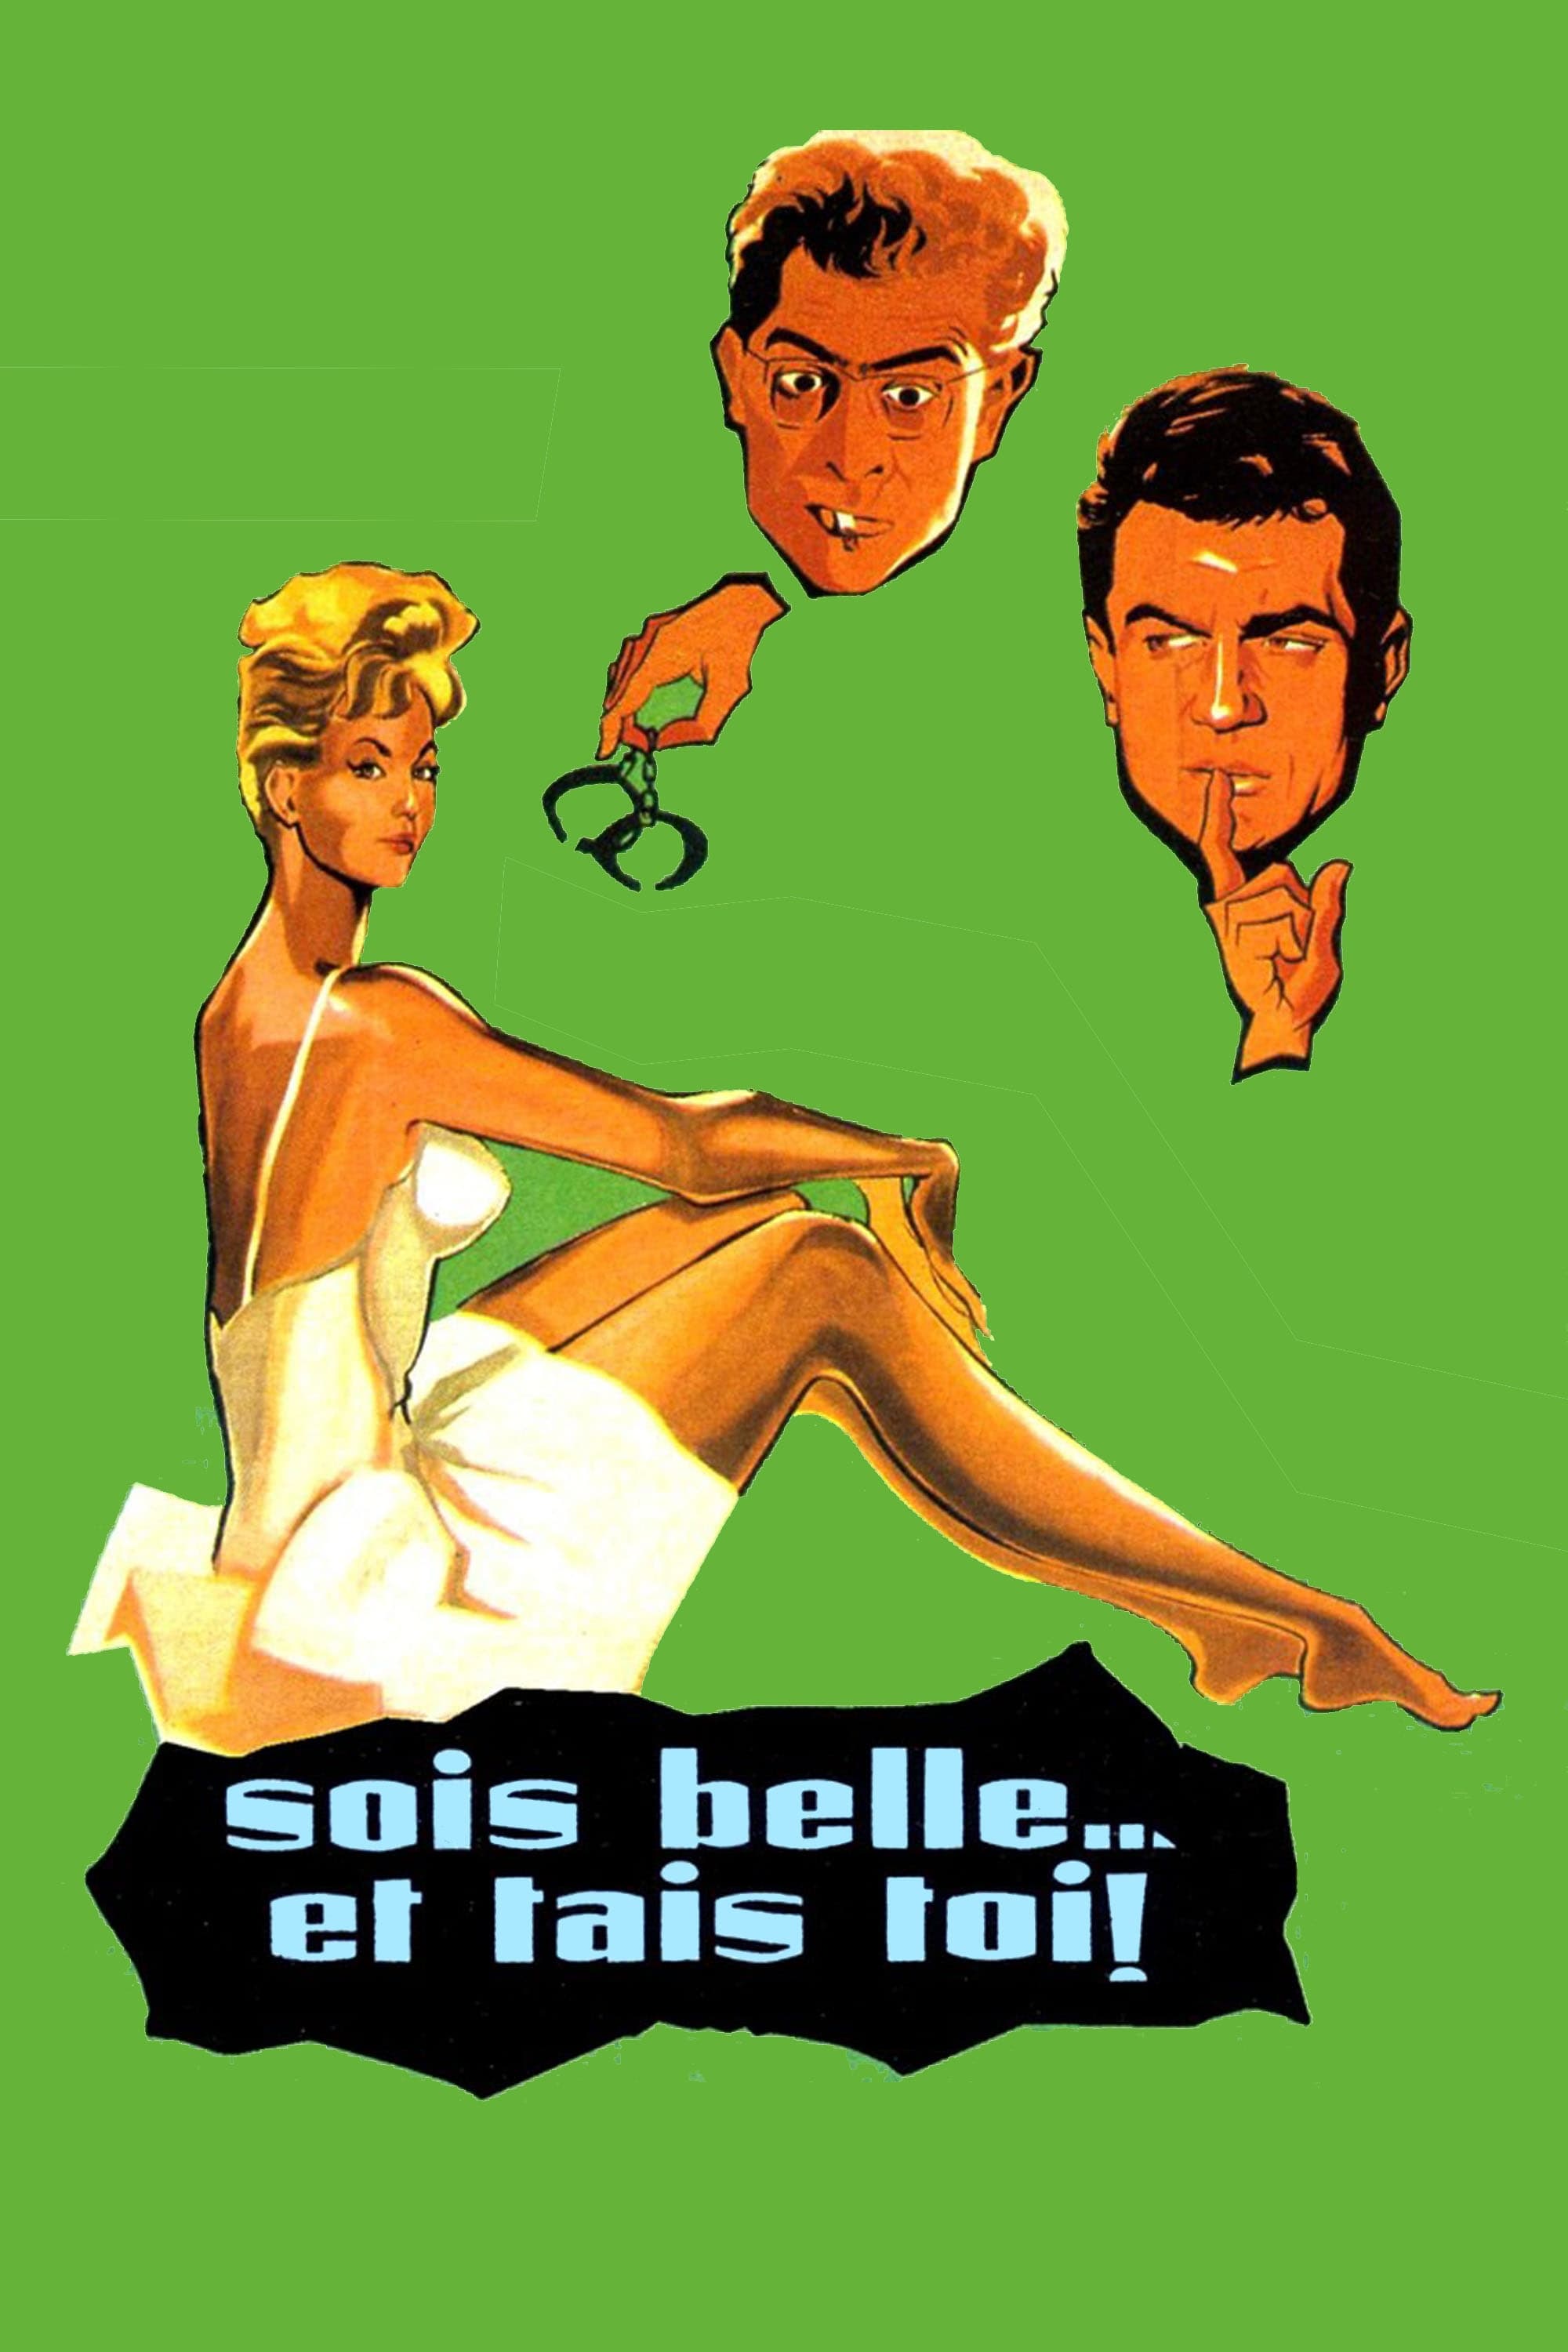 Sois belle et tais-toi (1958)